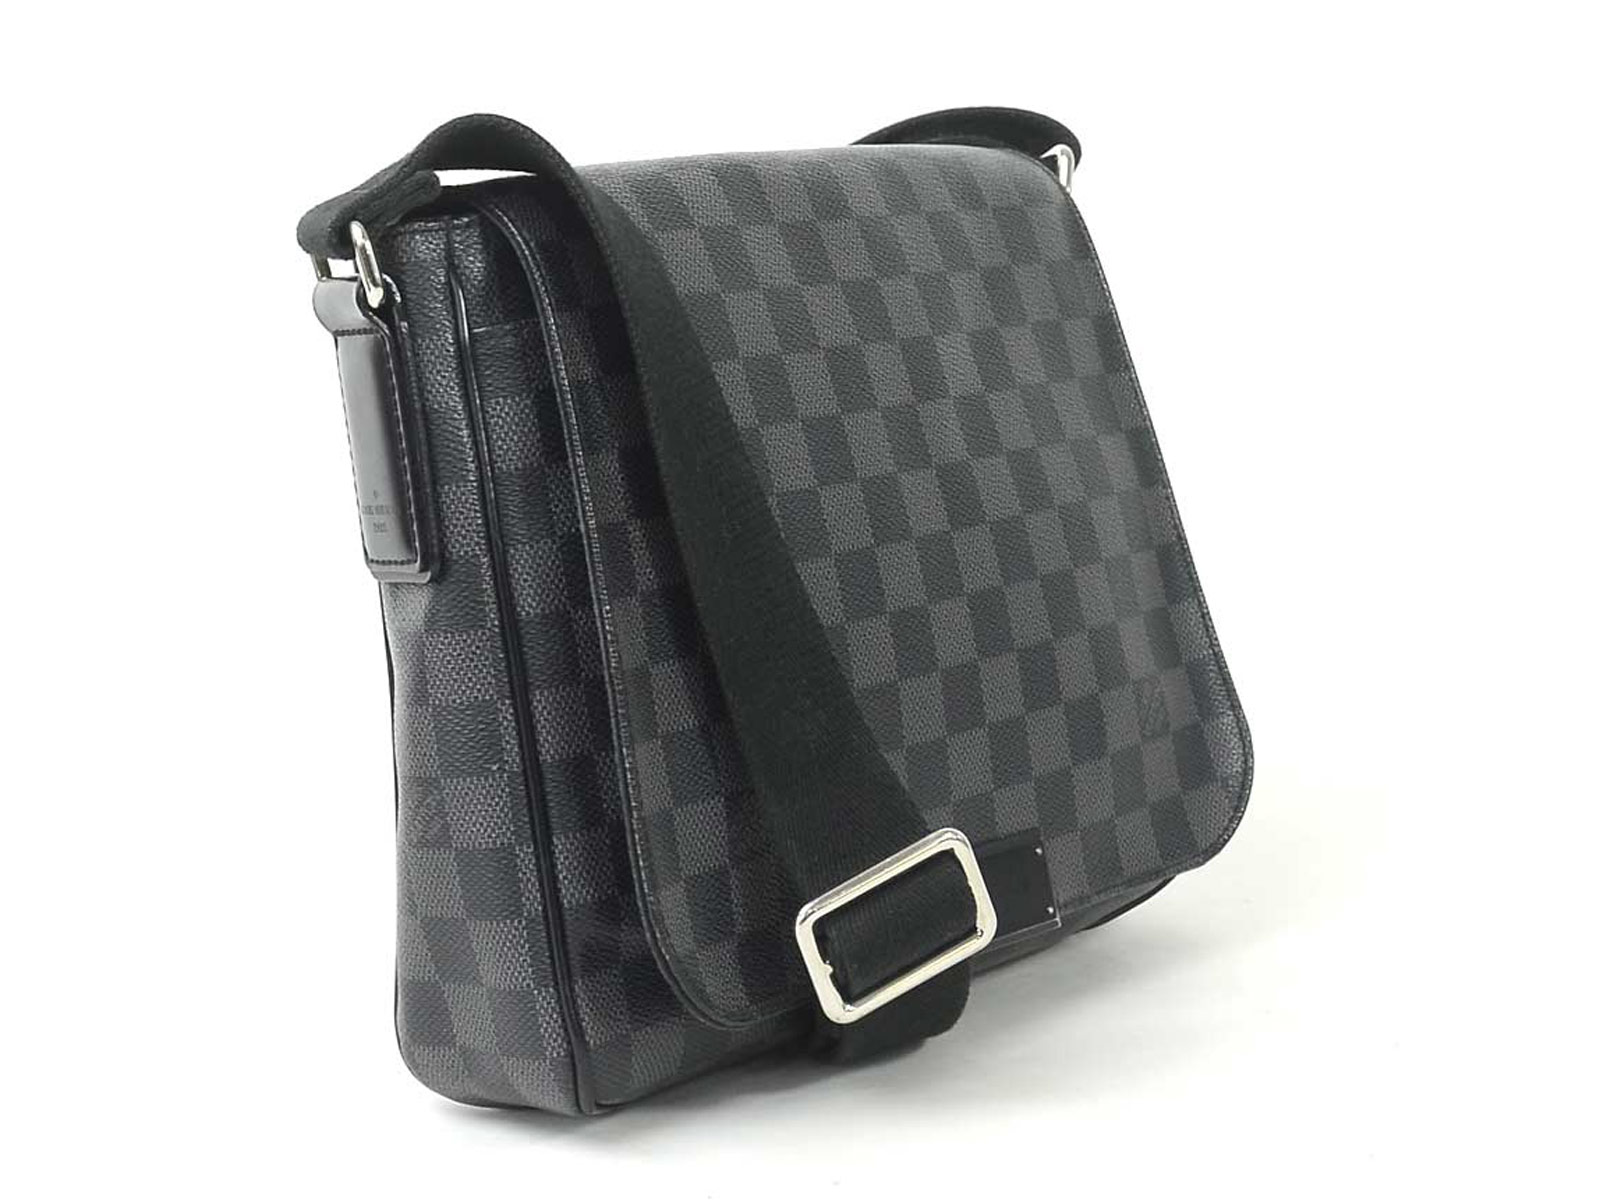 Auth Louis Vuitton Damier Graphite District PM Shoulder Bag N41260 - 96074 | eBay